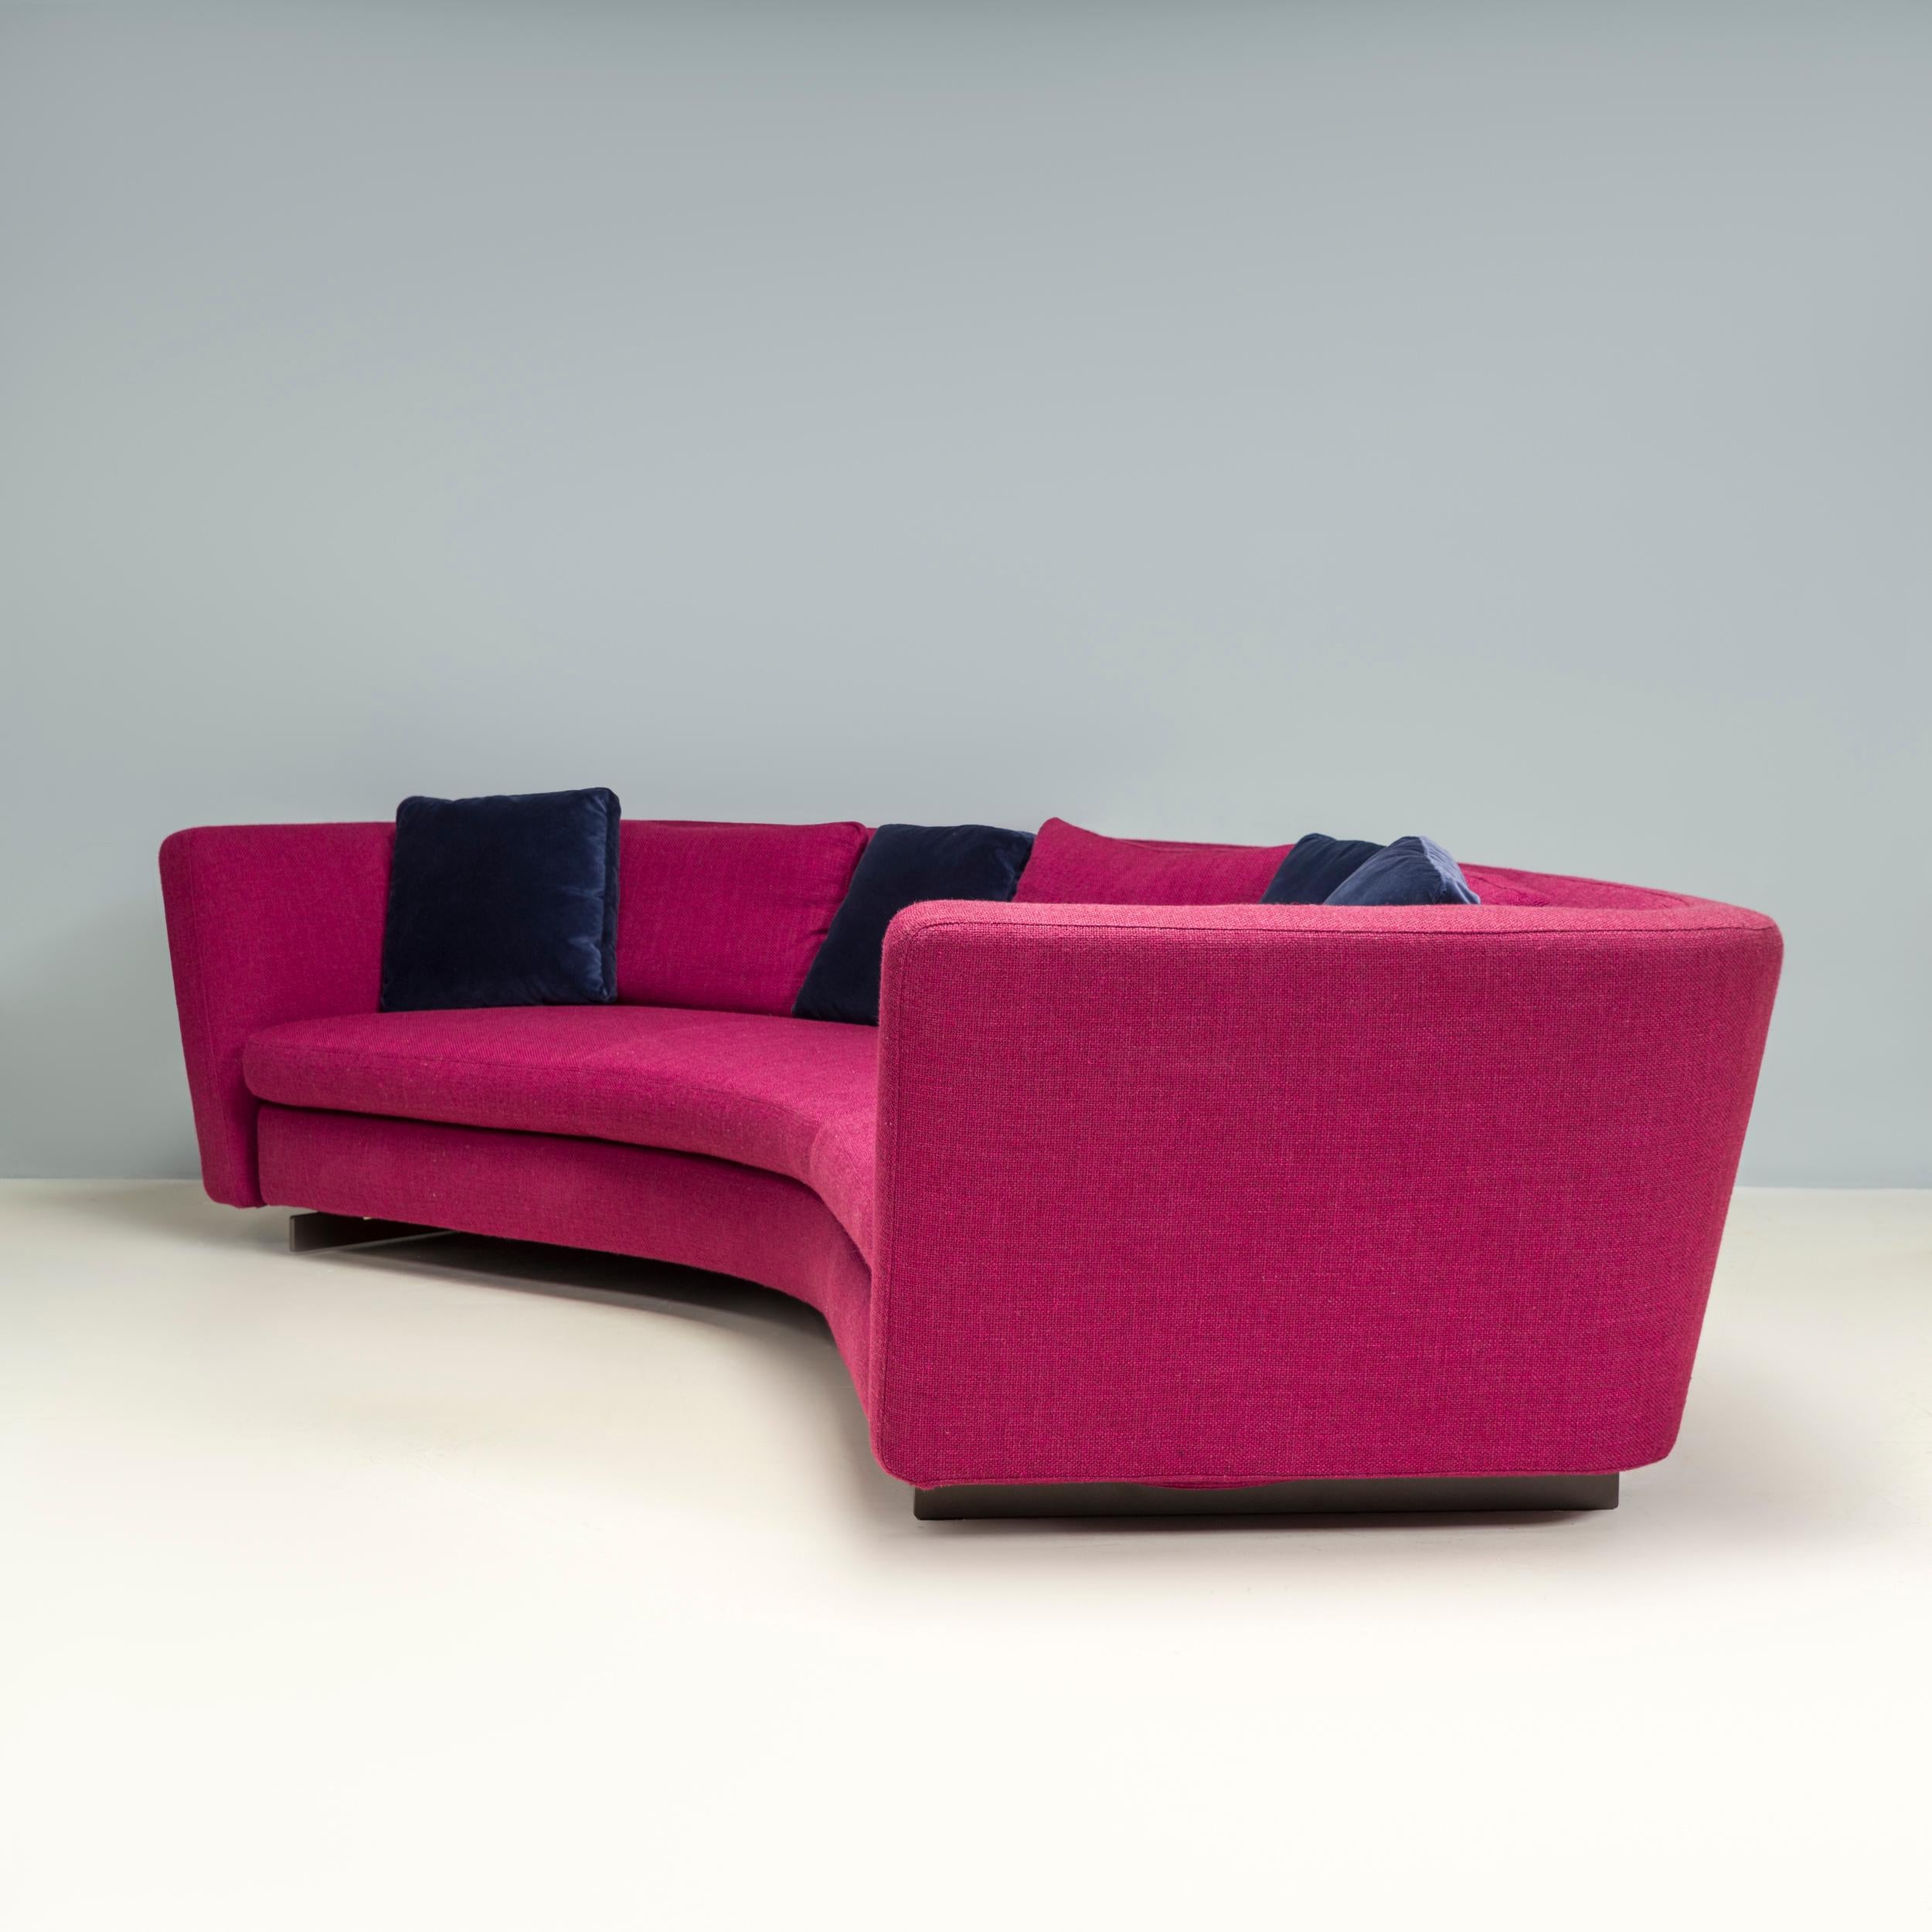  Minotti by Rodolfo Dordoni Purple Fabric Seymour Low 02 Semi Round Sofa In Good Condition For Sale In London, GB